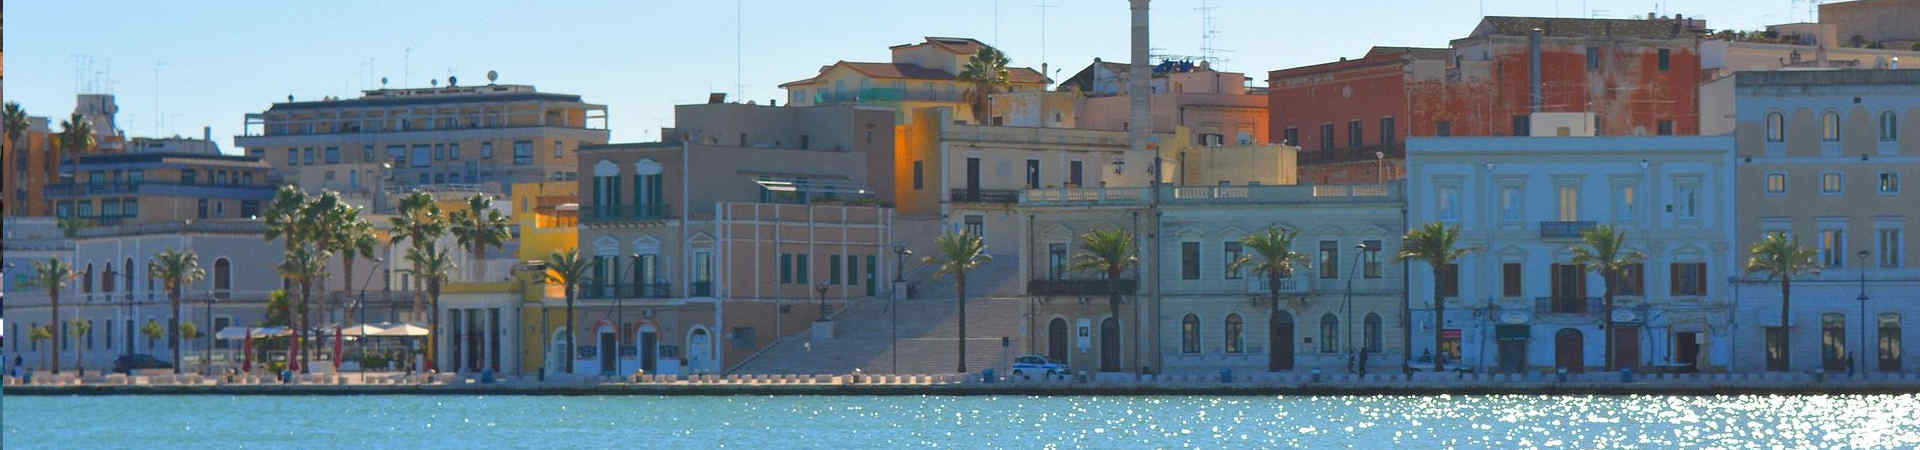 Immagine del porto di arrivo Brindisi per la rotta traghetto Patrasso - Brindisi